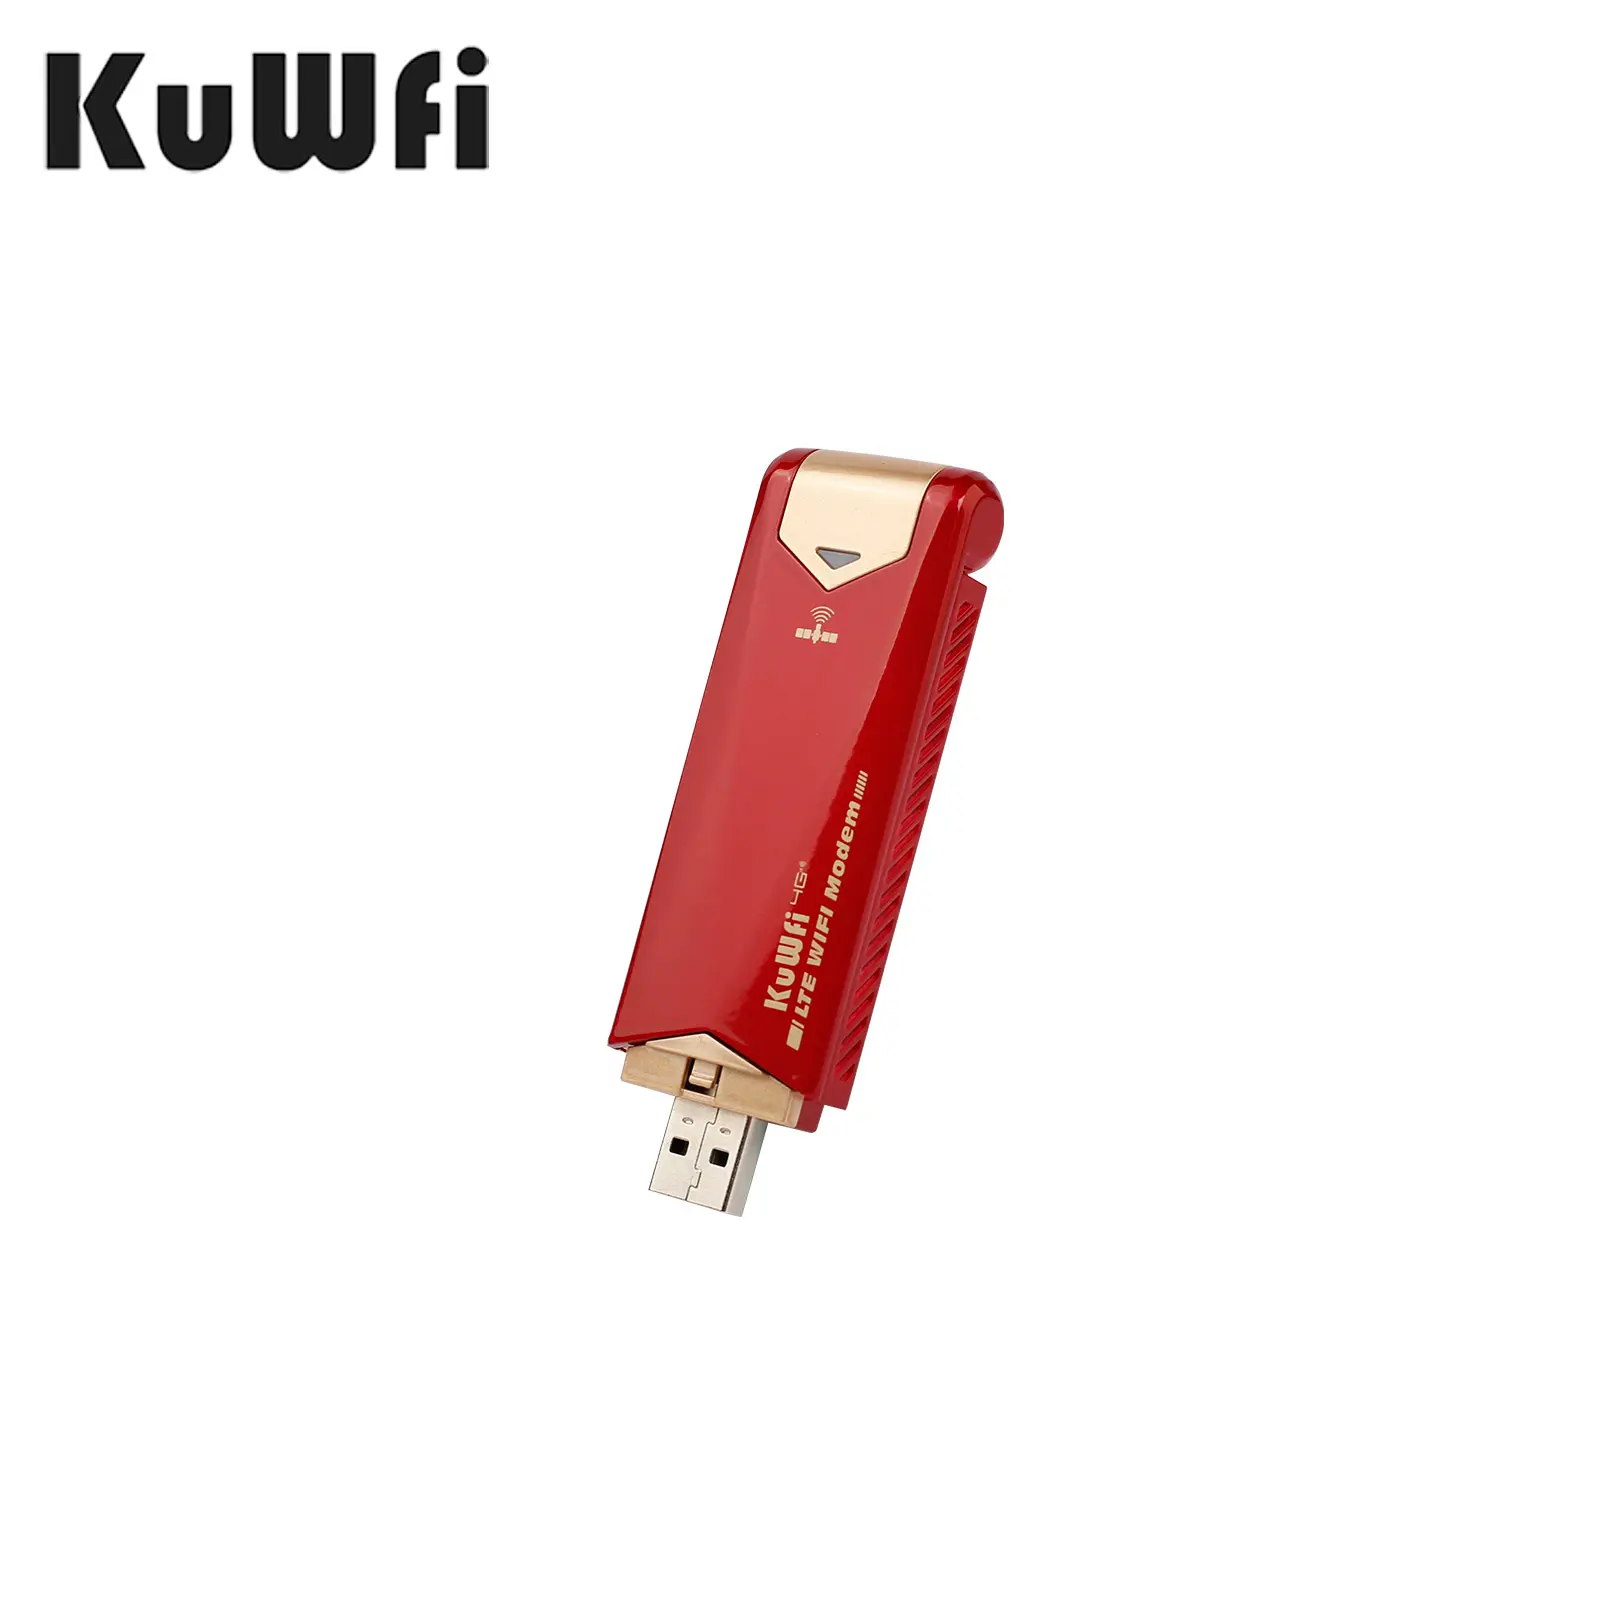 Kuwfi OEM 재고 도매 4g 5g USB 동글 SIM 슬롯 와이파이 라우터 실외 네트워크 연결에 적합